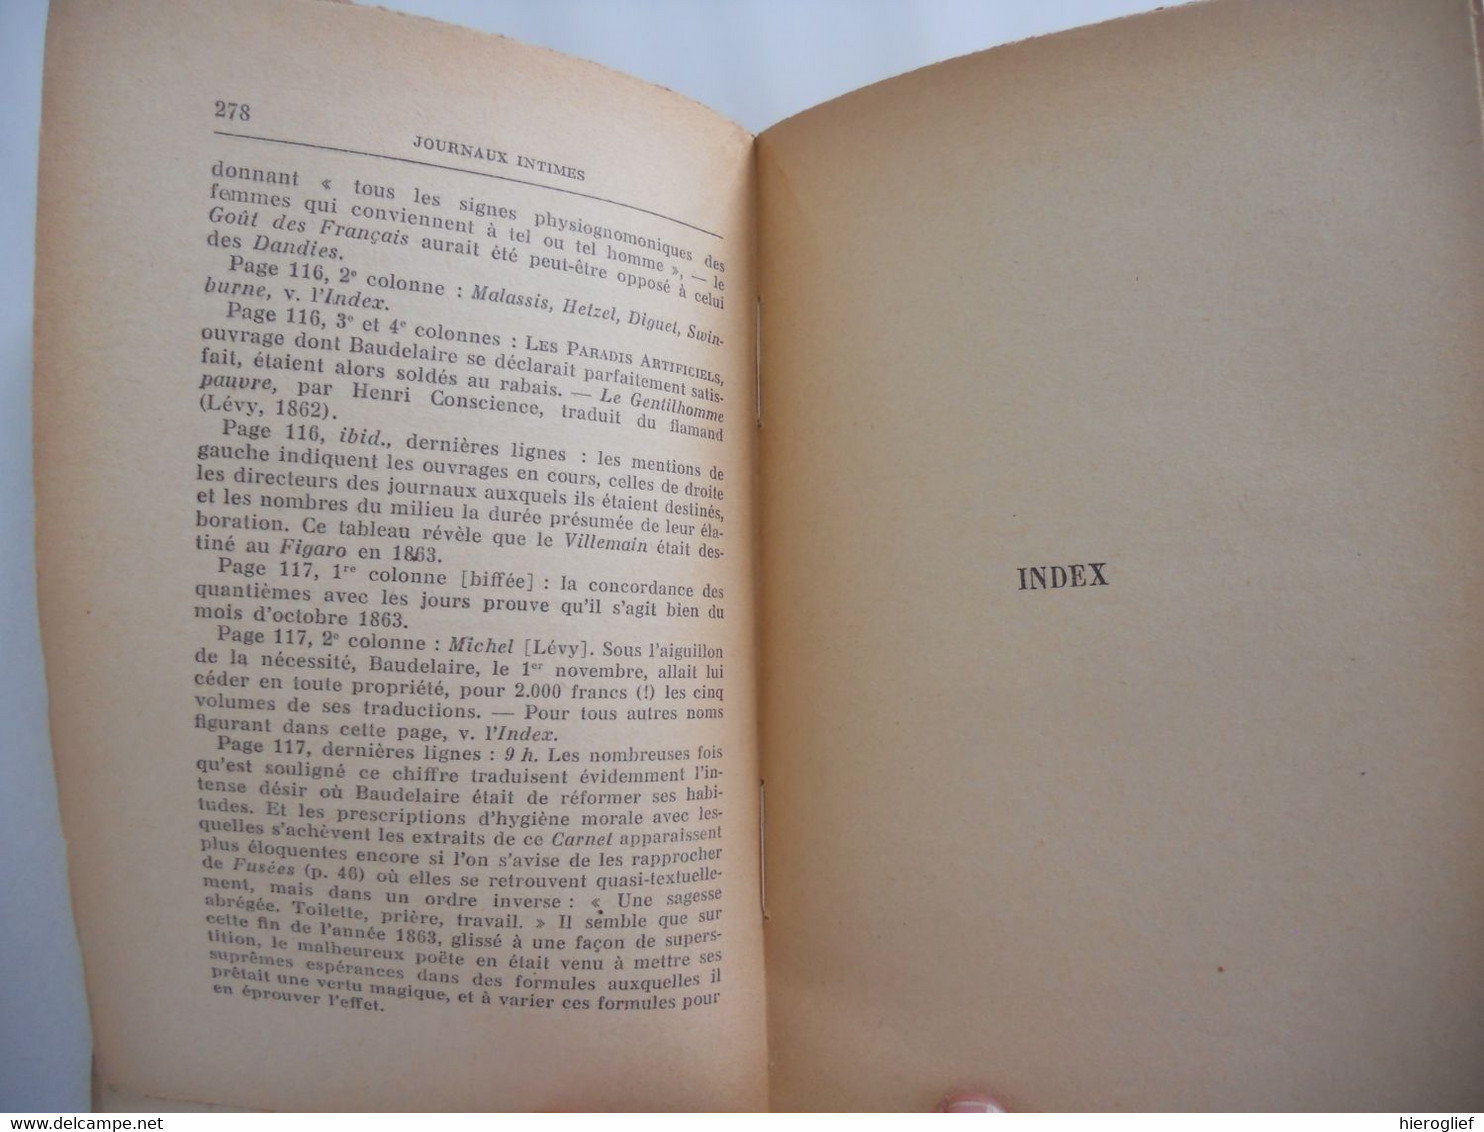 JOURNAUX INTIMES Par Charles Baudelaire 1938 Avertissement Et Notes De Jacques Crepet - French Authors